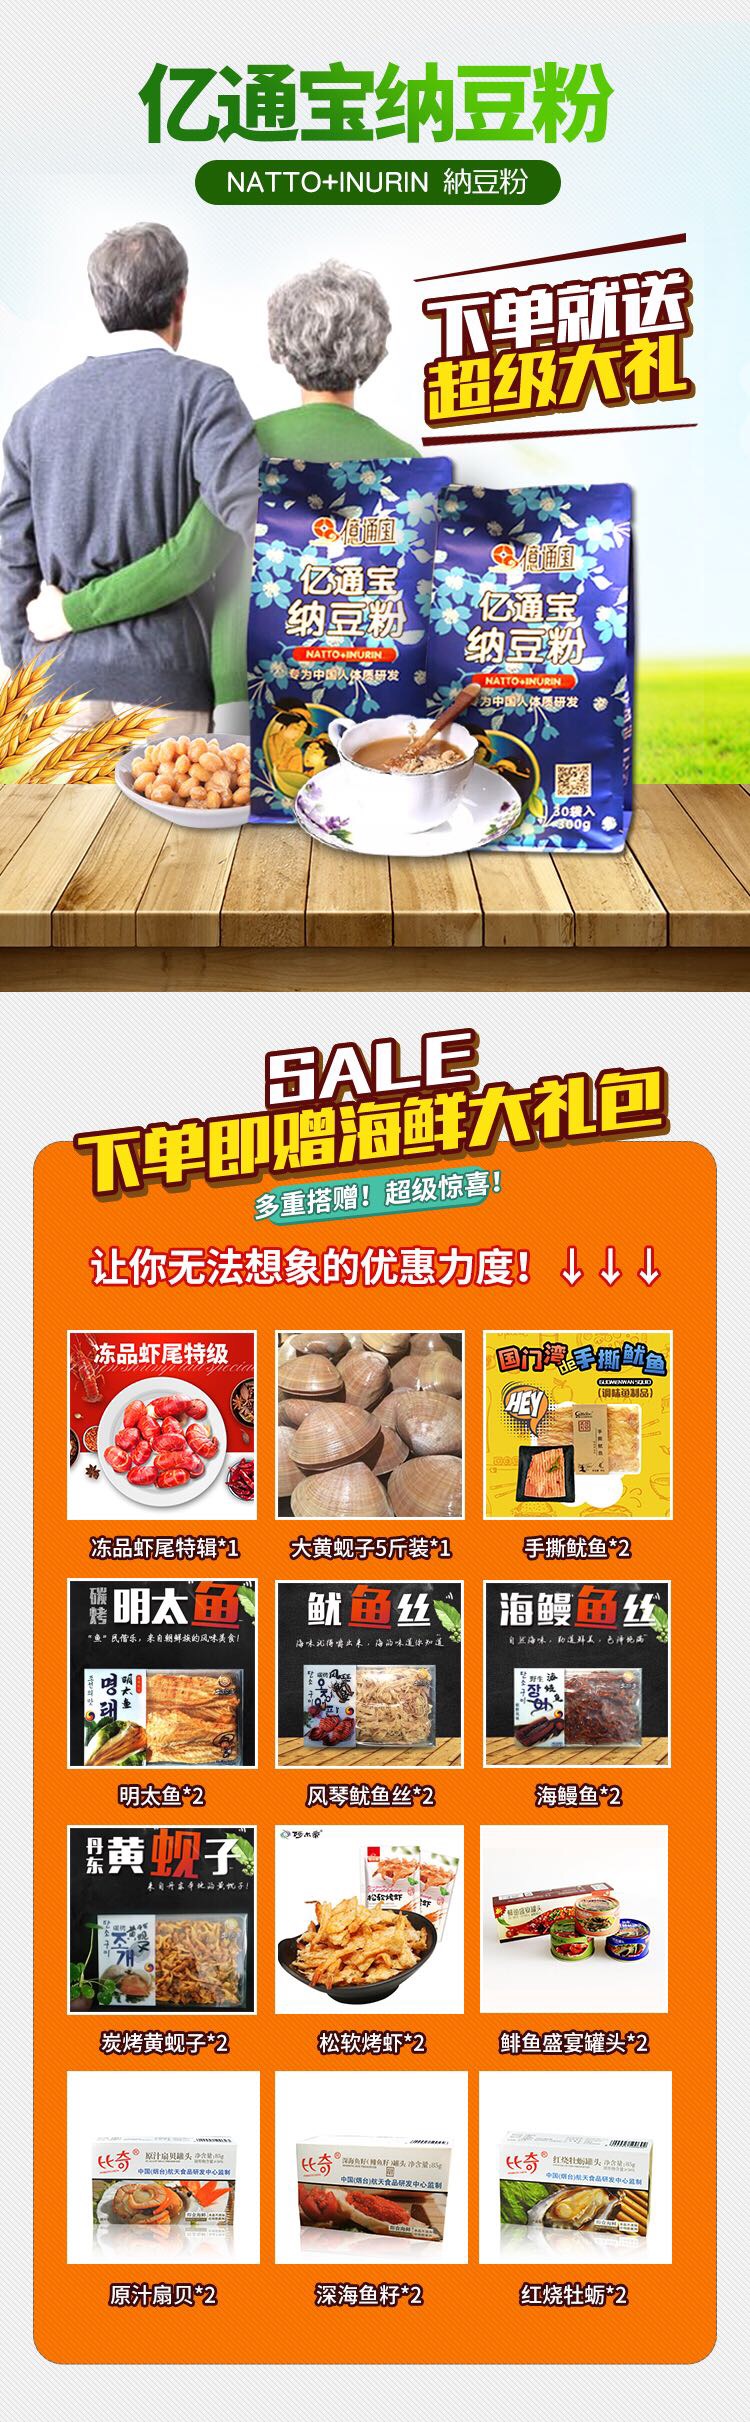 纳豆粉日本食监药监双认证产品赠送海鲜礼包